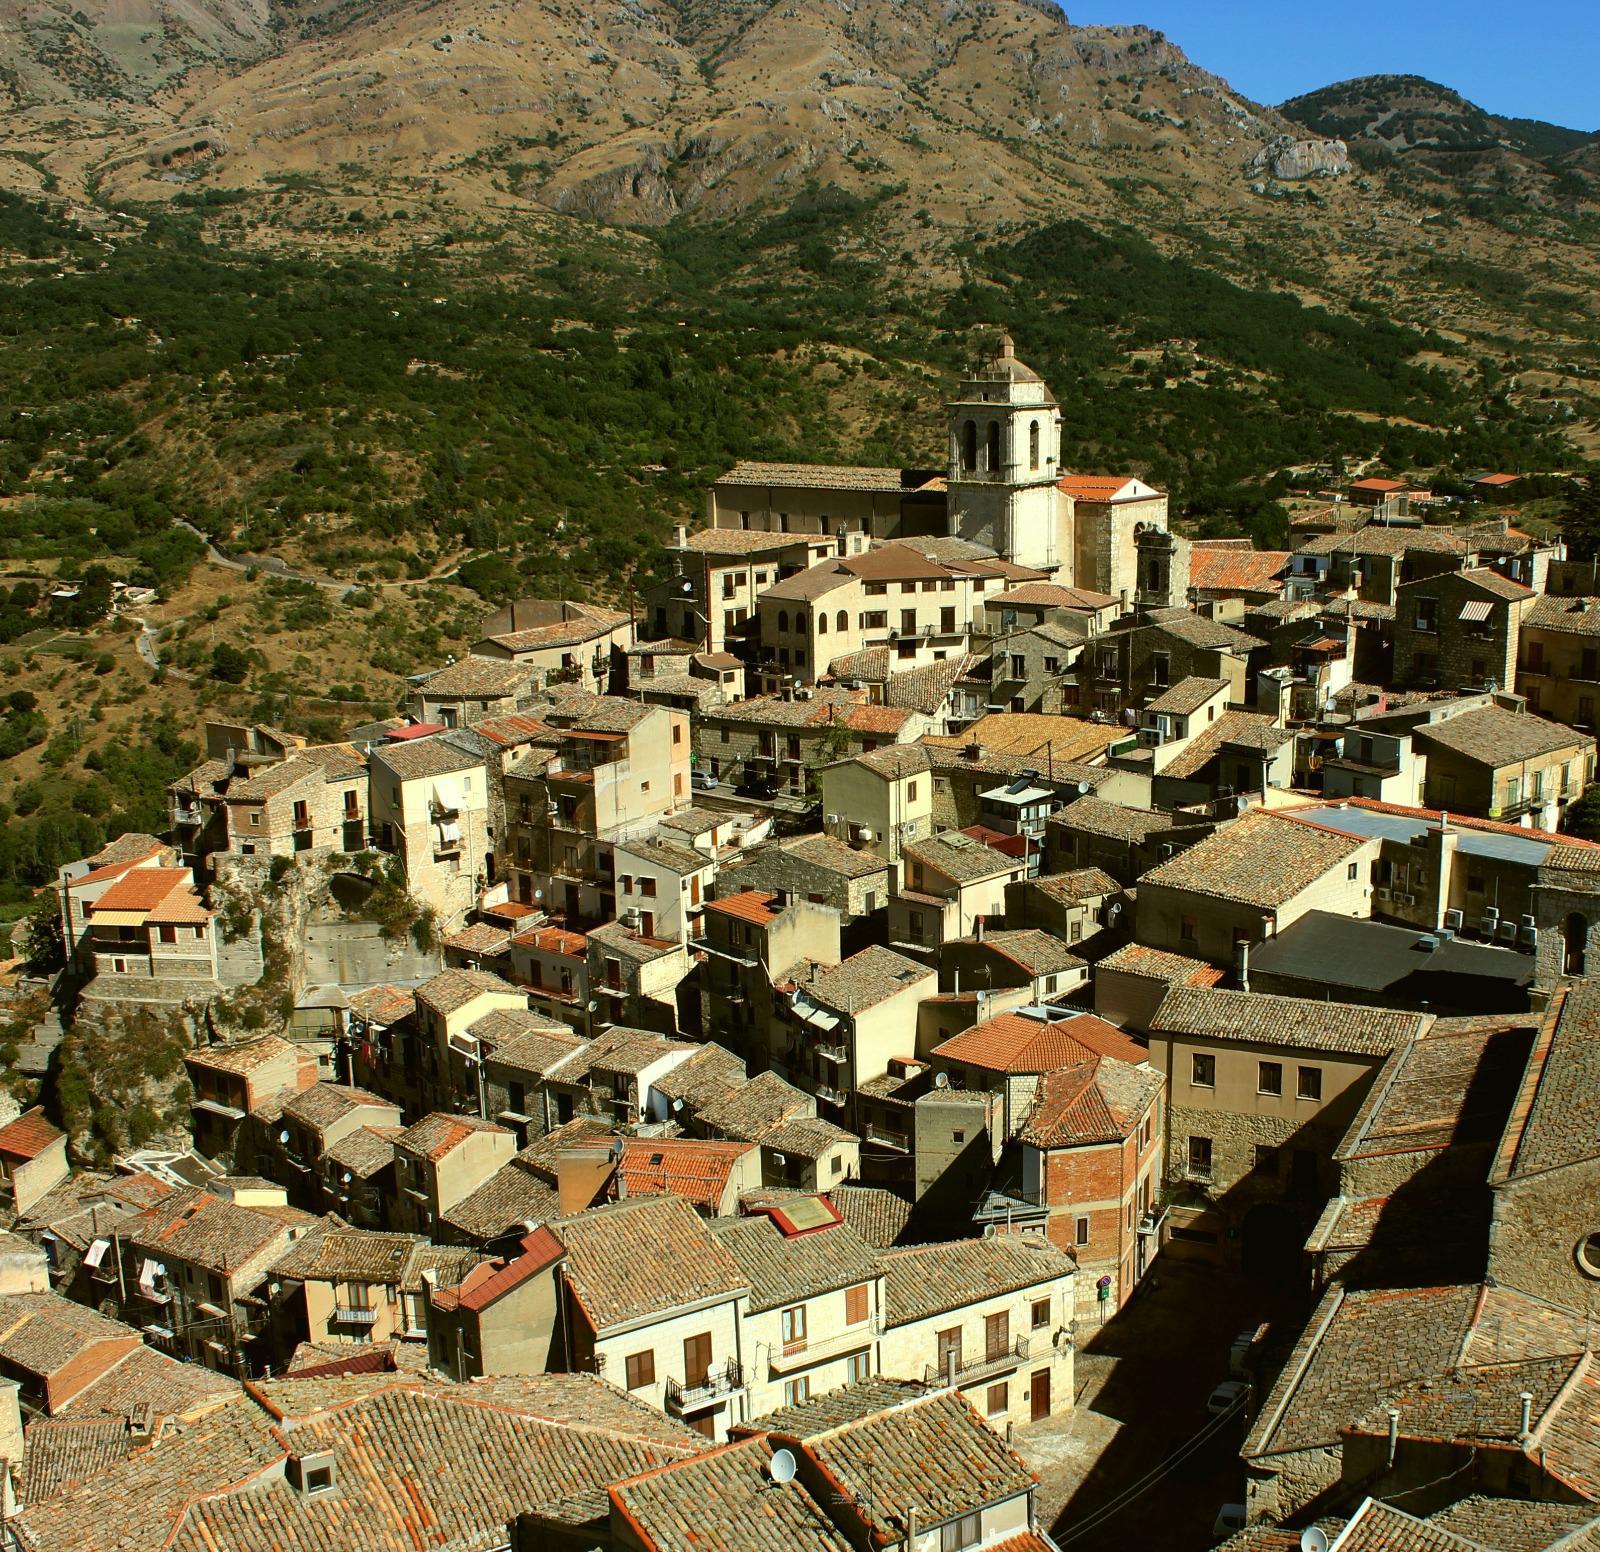 Municipality of Petralia Sottana